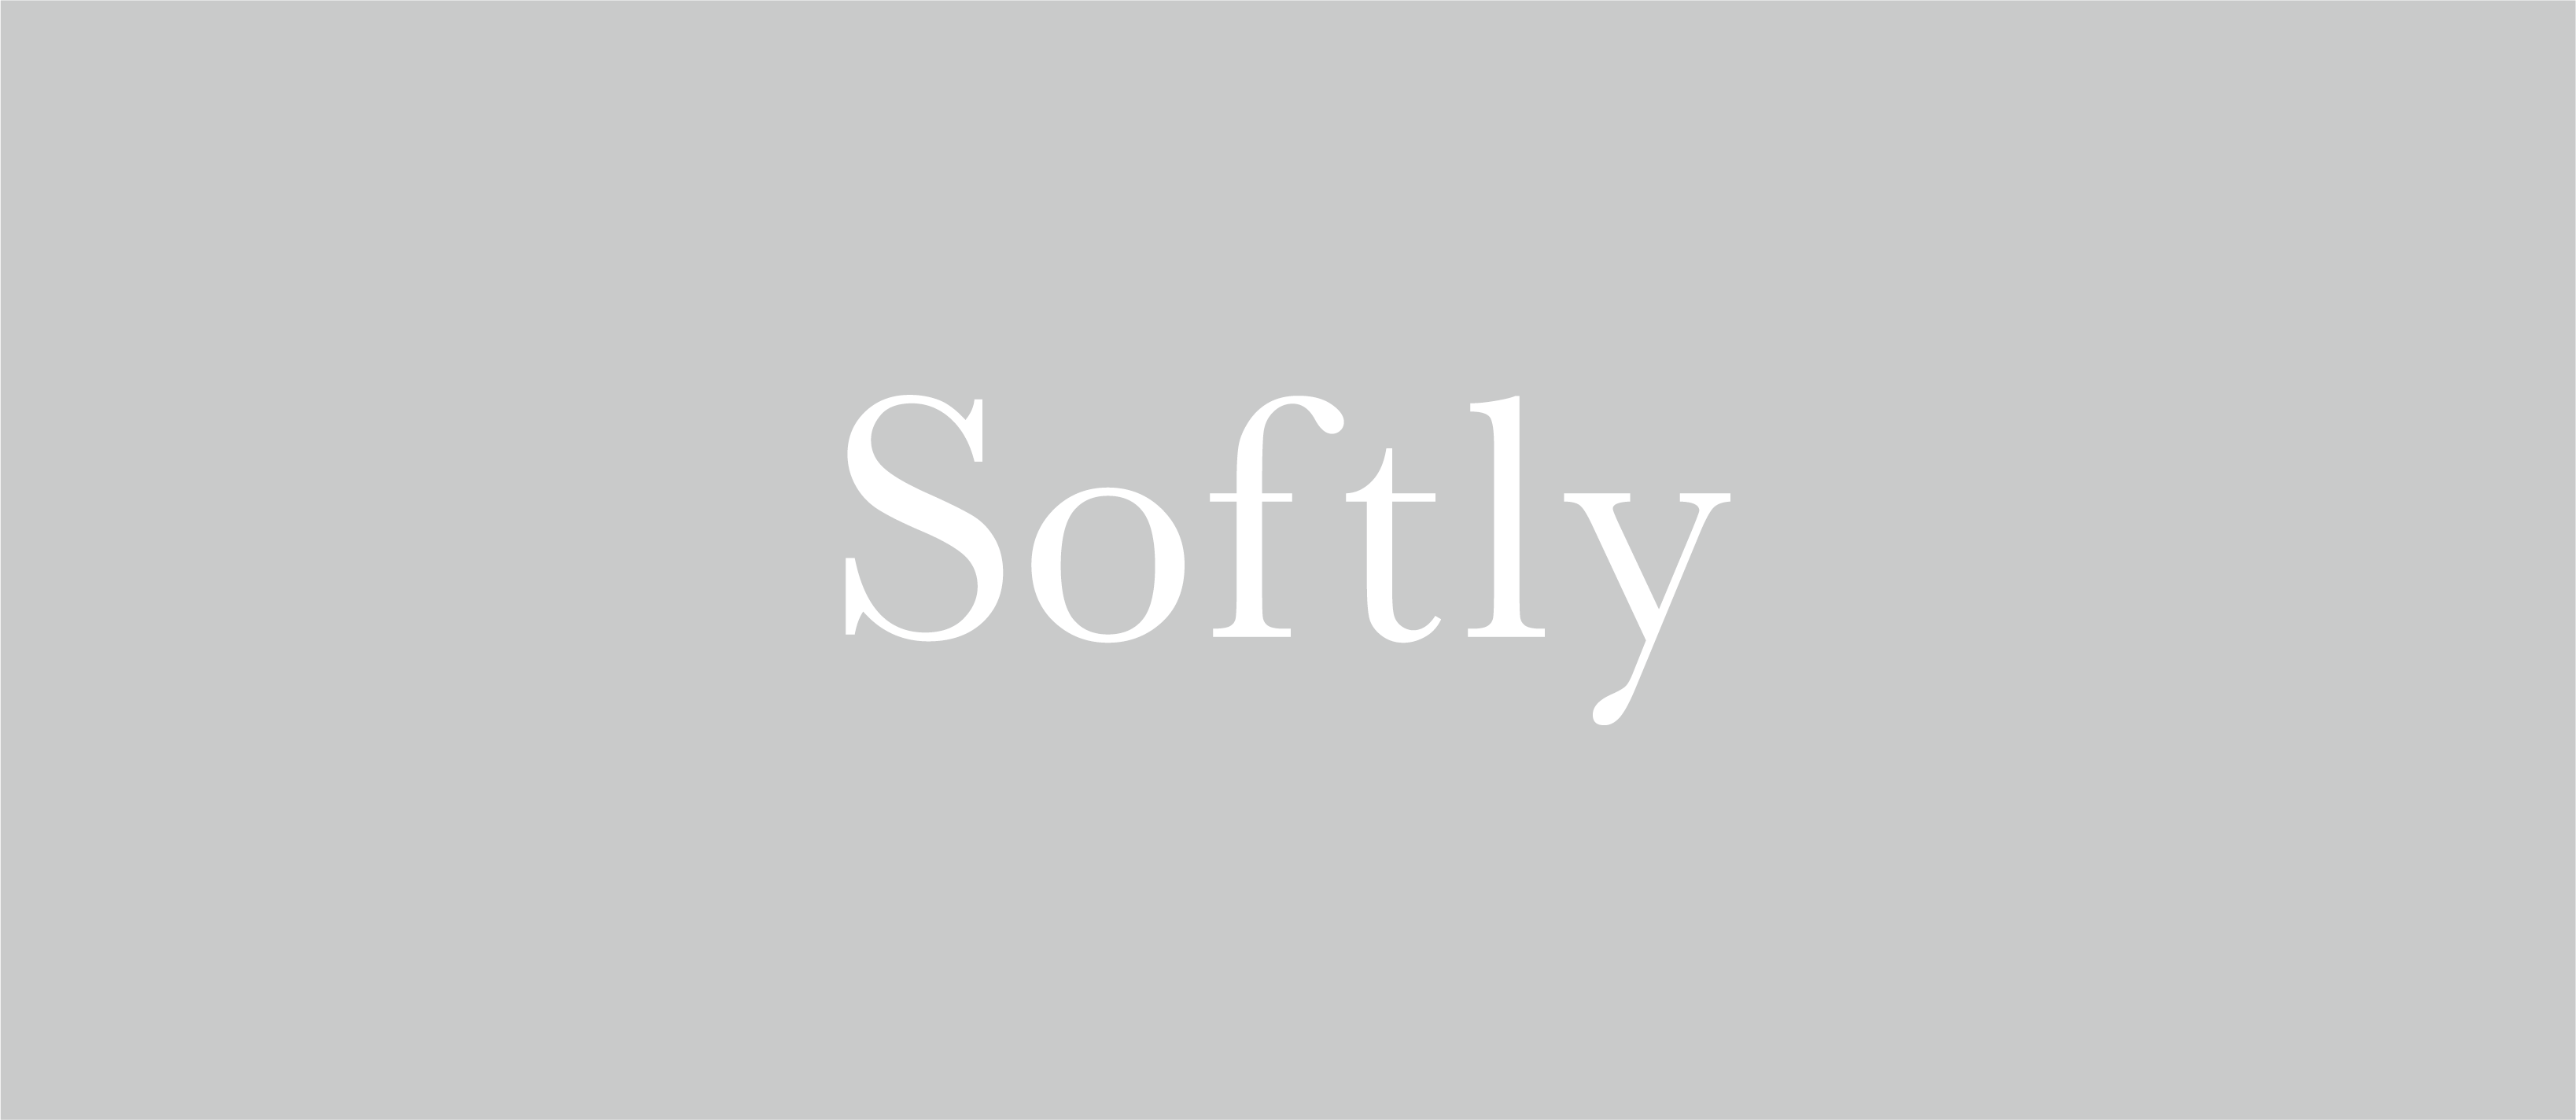 Softly_logo